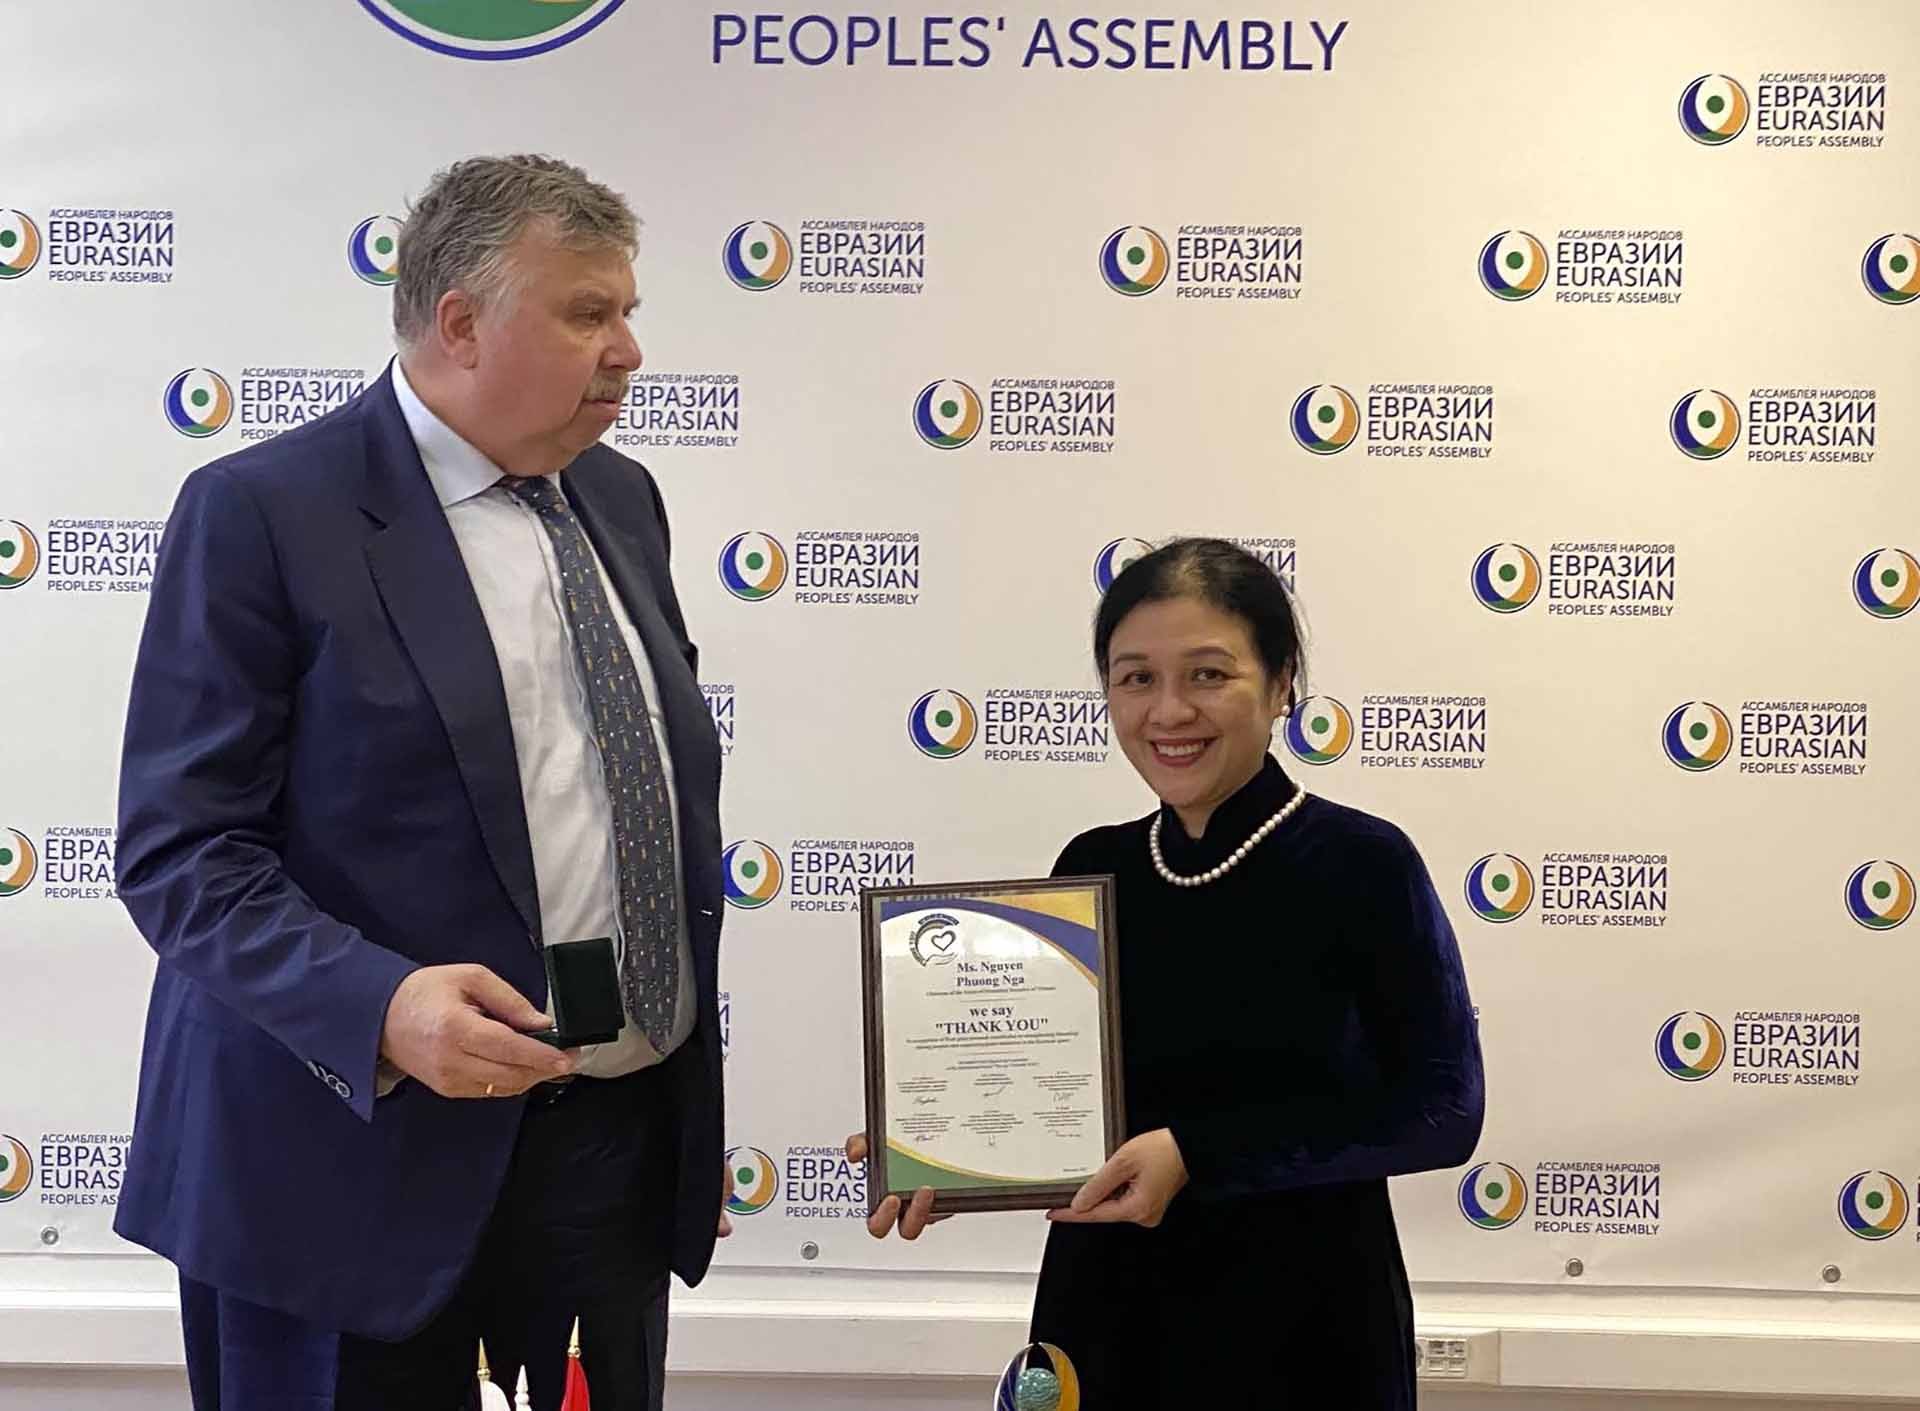 Chủ tịch Hiệp hội nhân dân Á- Âu Belyaninov đã trao tặng Bà Nguyễn Phương Nga Kỷ niệm chương “ Chúng tôi nói Cảm ơn”